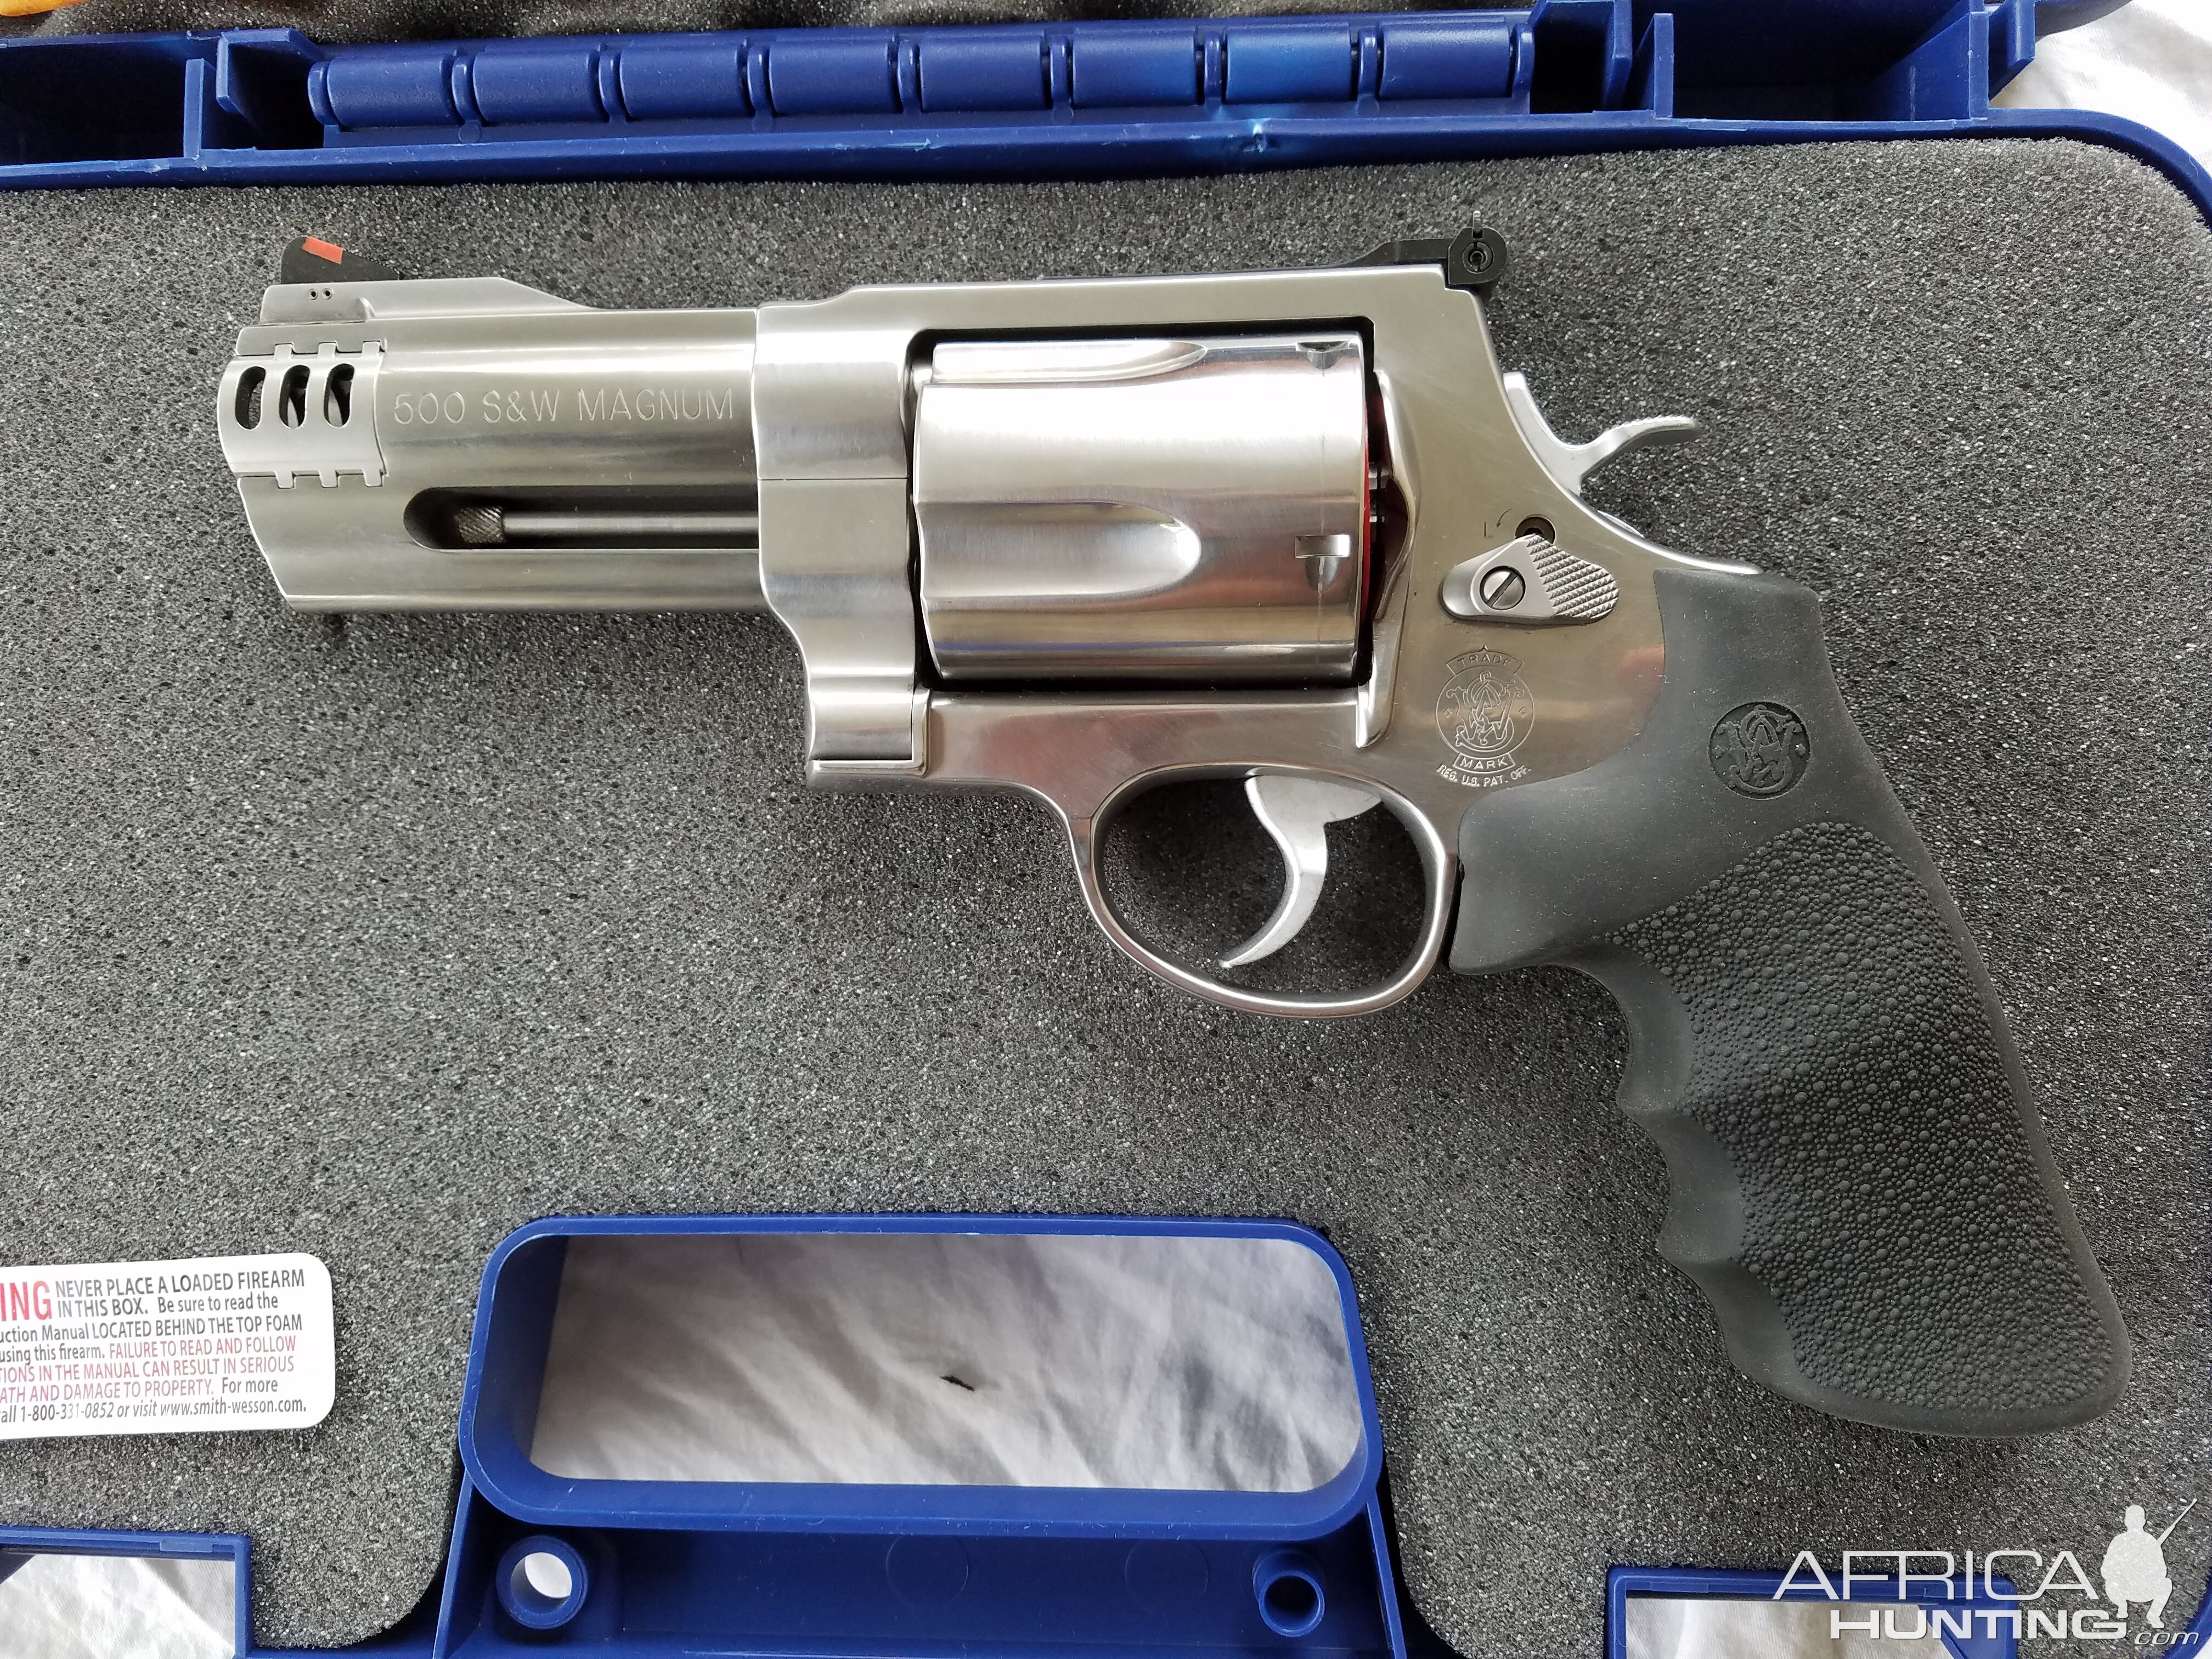 500 S&W 4" Revolver